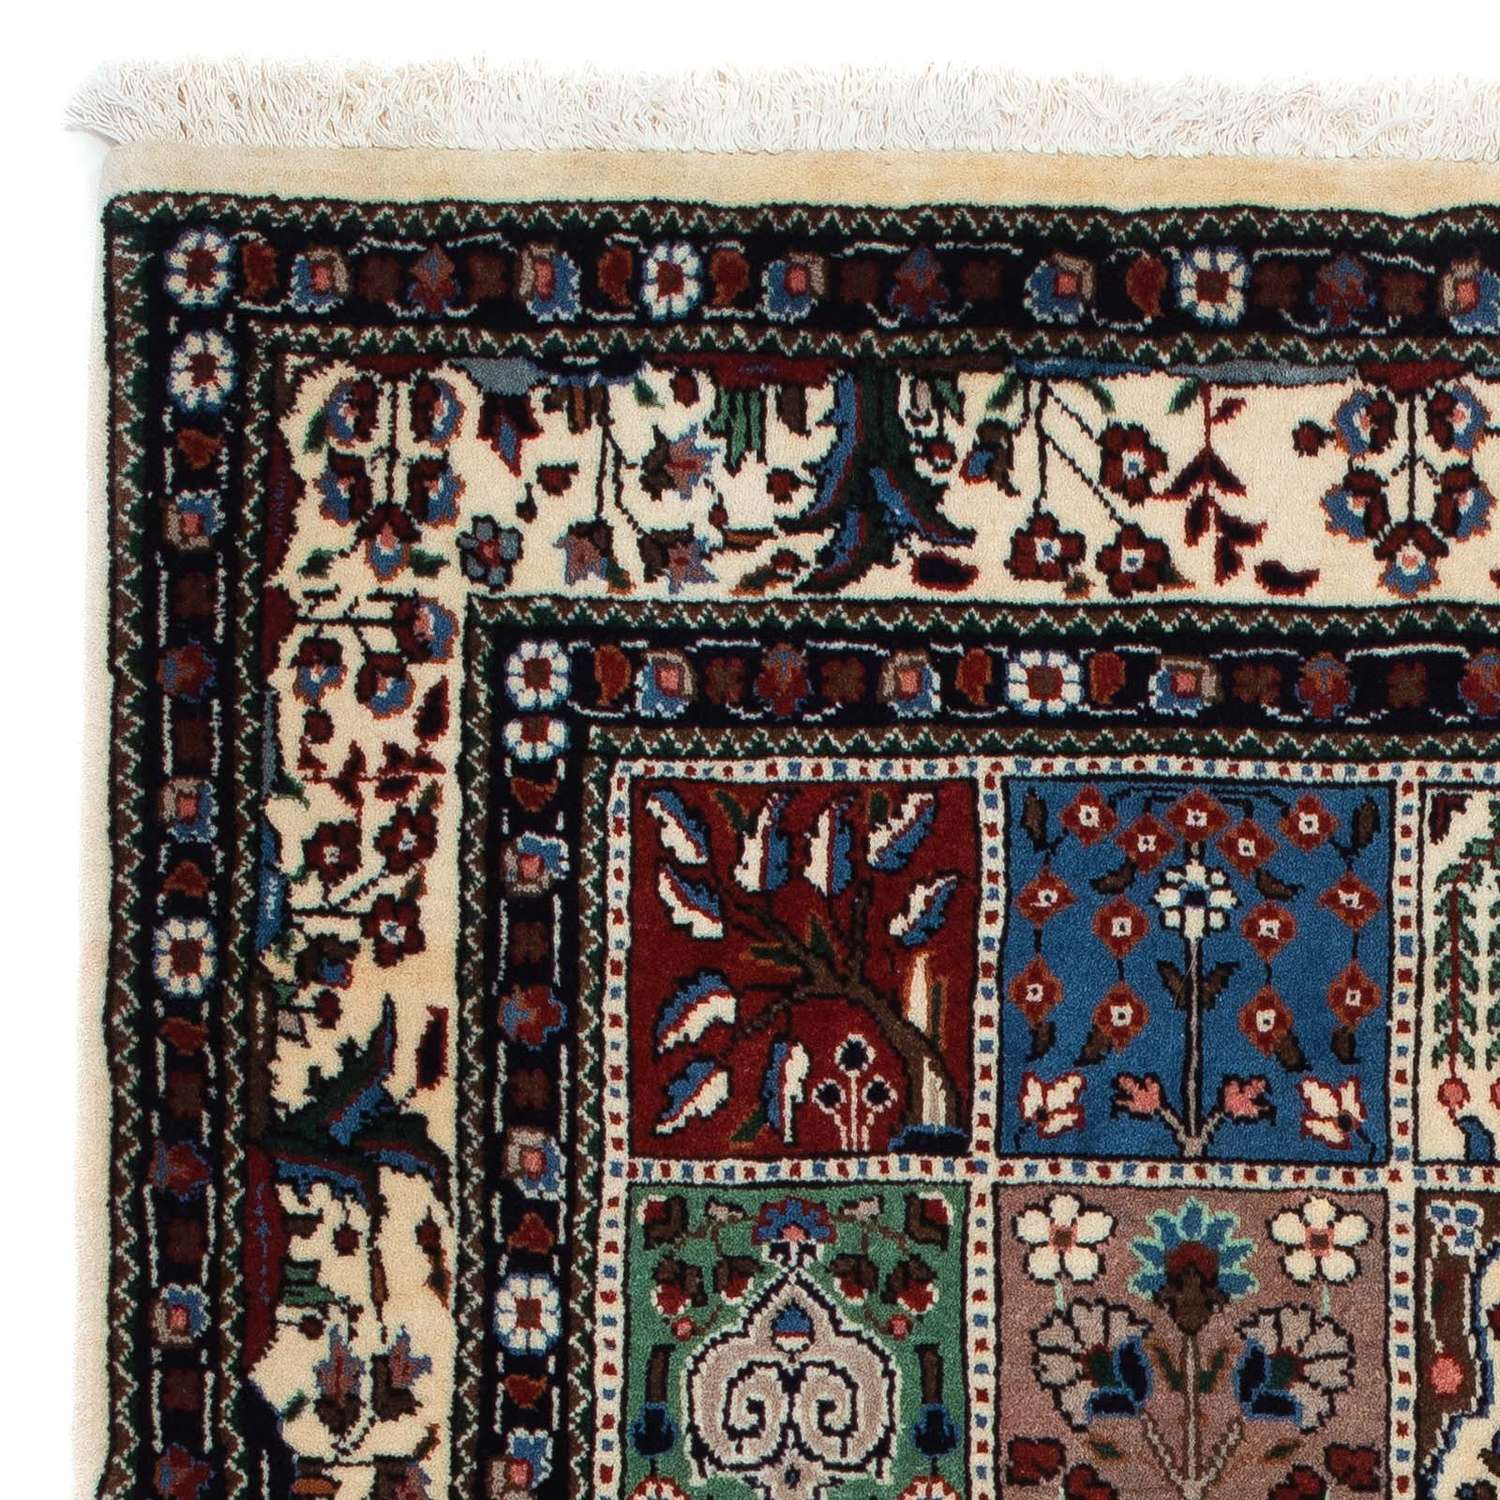 Perzisch tapijt - Klassiek - 140 x 96 cm - veelkleurig